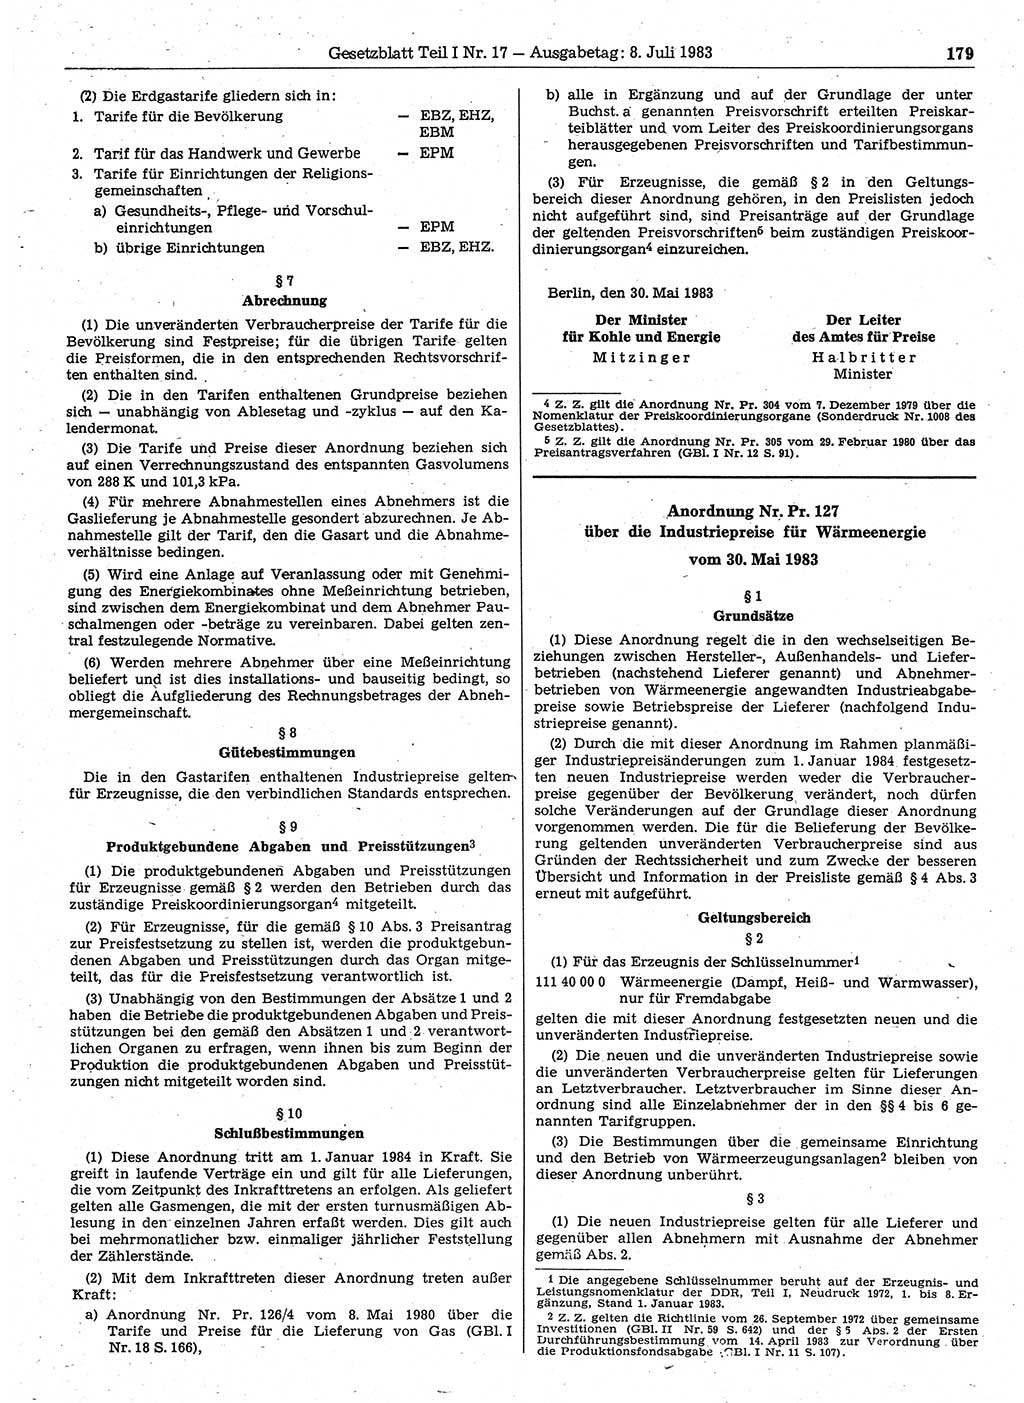 Gesetzblatt (GBl.) der Deutschen Demokratischen Republik (DDR) Teil Ⅰ 1983, Seite 179 (GBl. DDR Ⅰ 1983, S. 179)